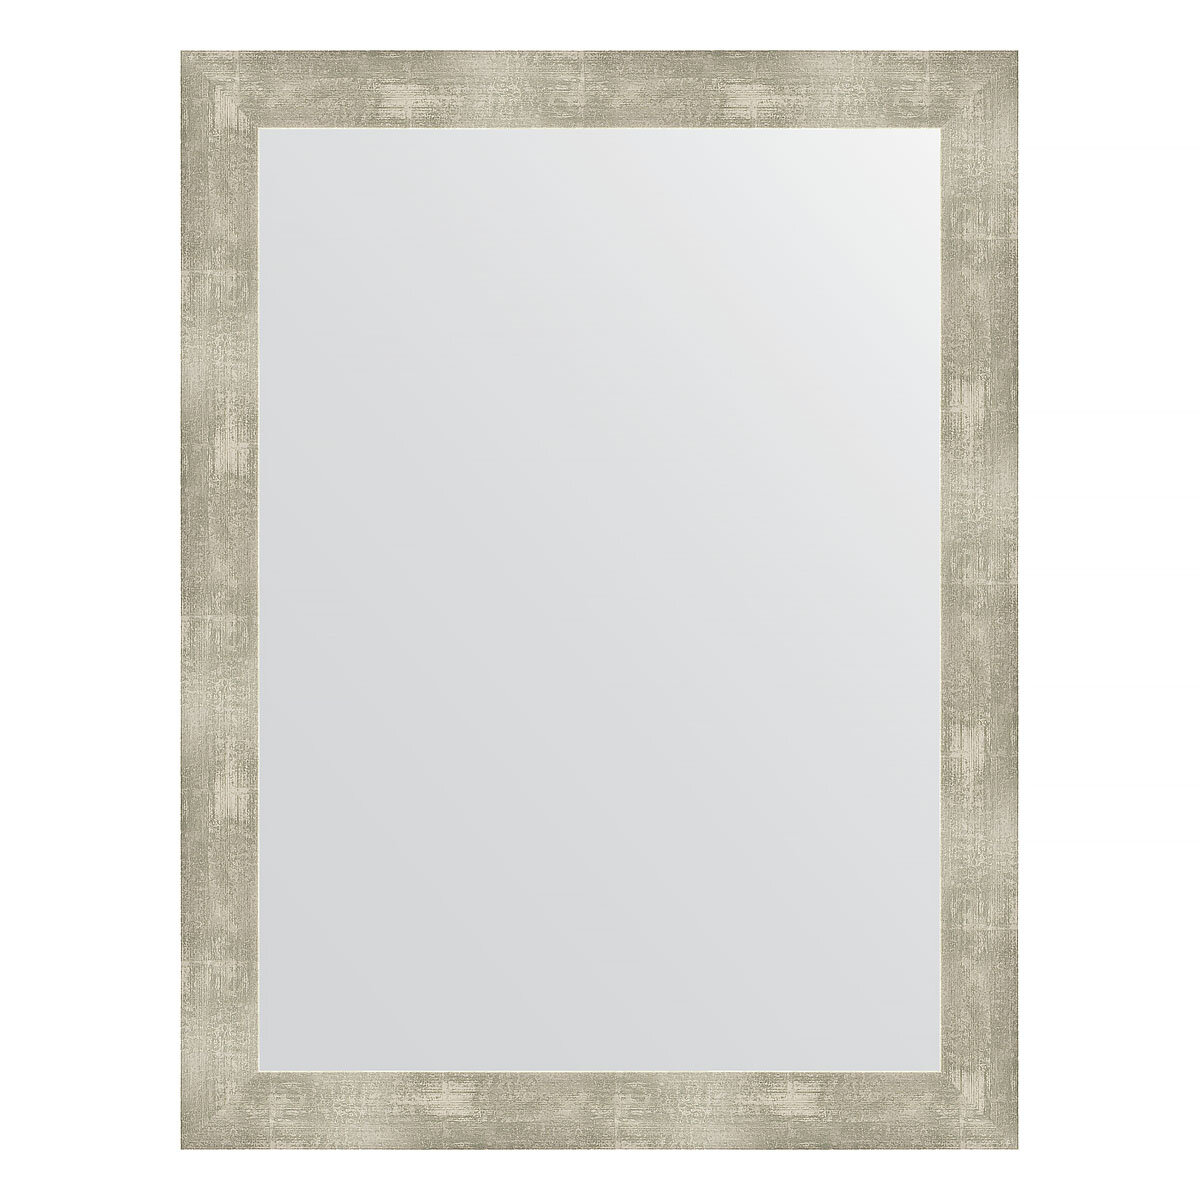 Evoform Зеркало настенное EVOFORM в багетной раме алюминий, 64х84 см, BY 3172